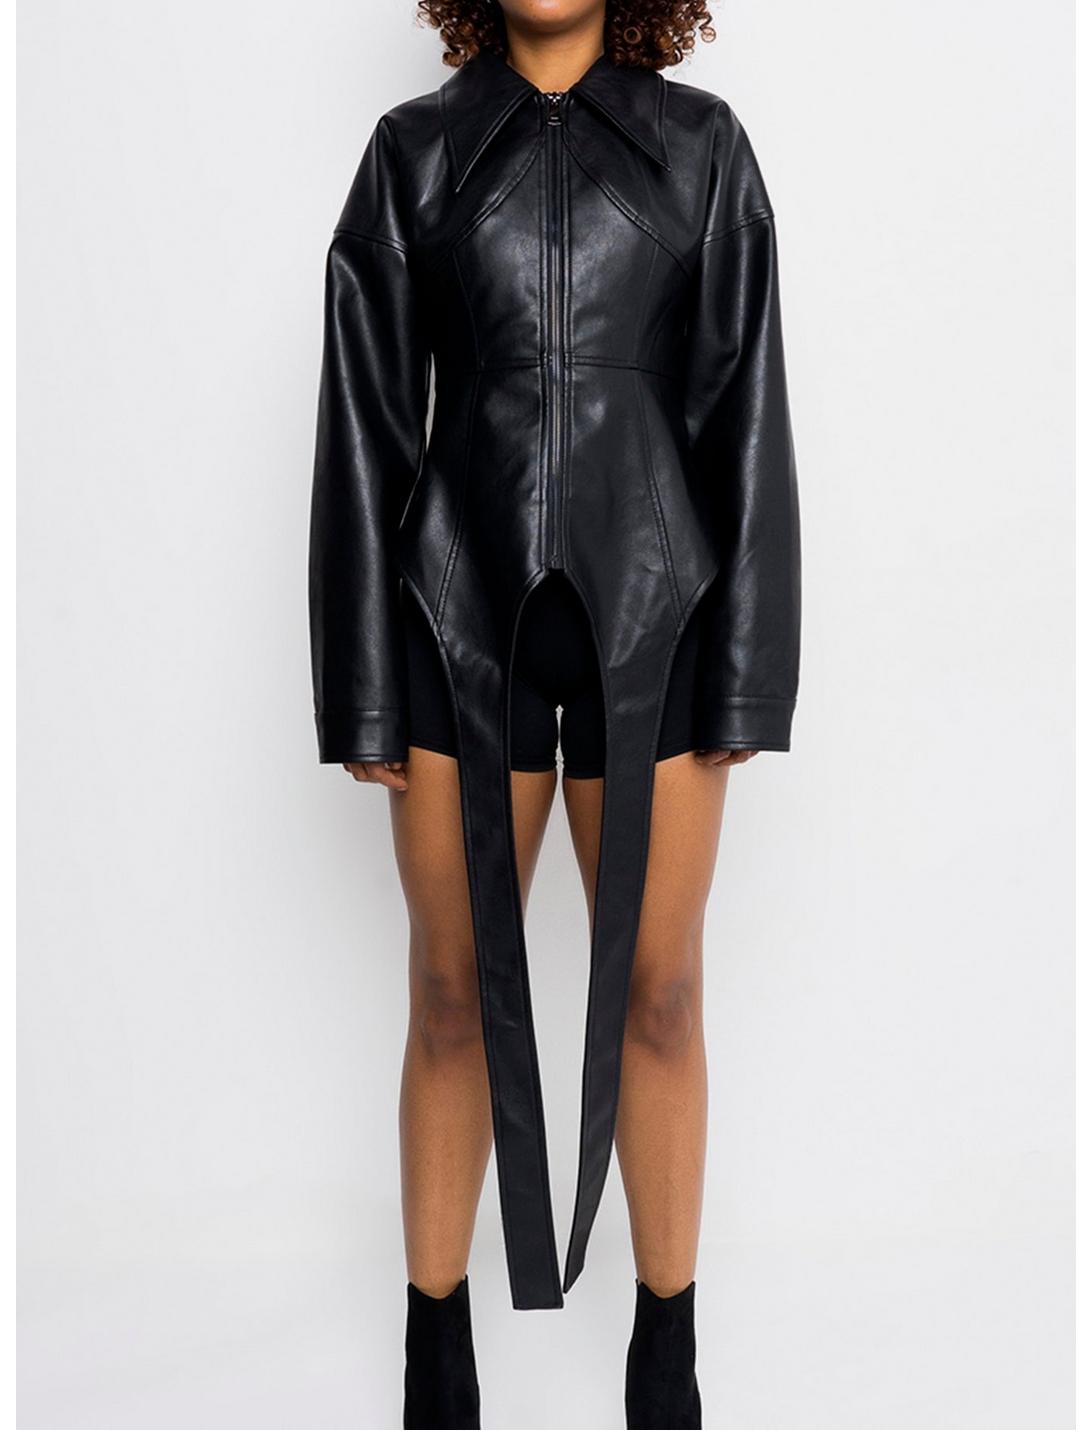 Azalea Wang Rule Breaker Faux Leather Jacket, BLACK, hi-res